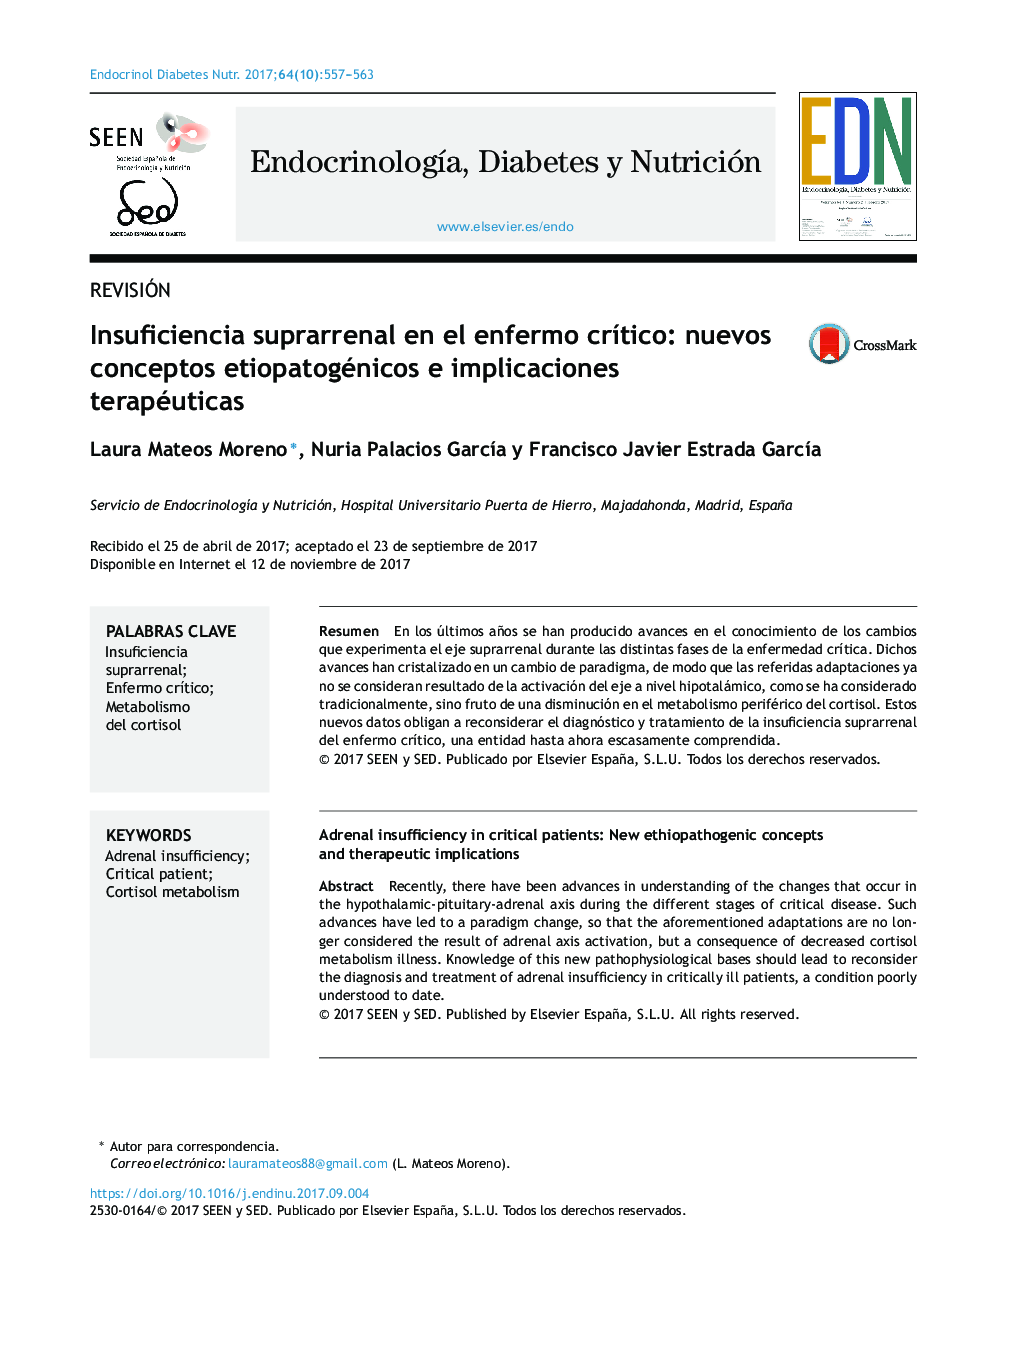 Insuficiencia suprarrenal en el enfermo crÃ­tico: nuevos conceptos etiopatogénicos e implicaciones terapéuticas